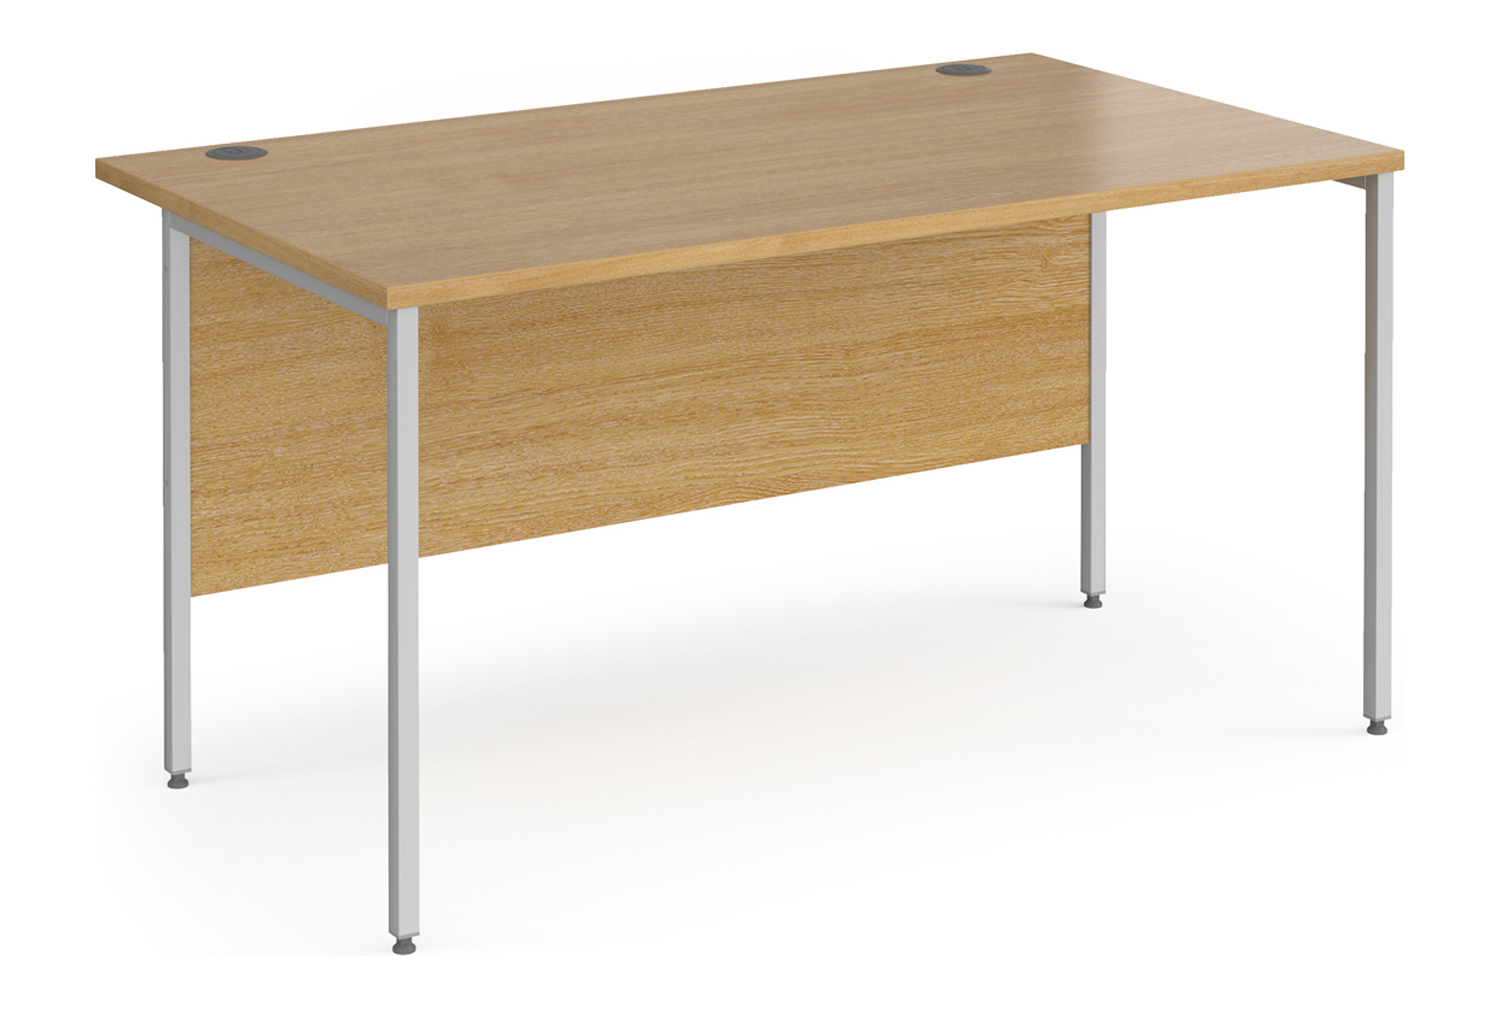 Value Line Classic+ Rectangular H-Leg Office Desk (Silver Leg), 140wx80dx73h (cm), Oak, Fully Installed